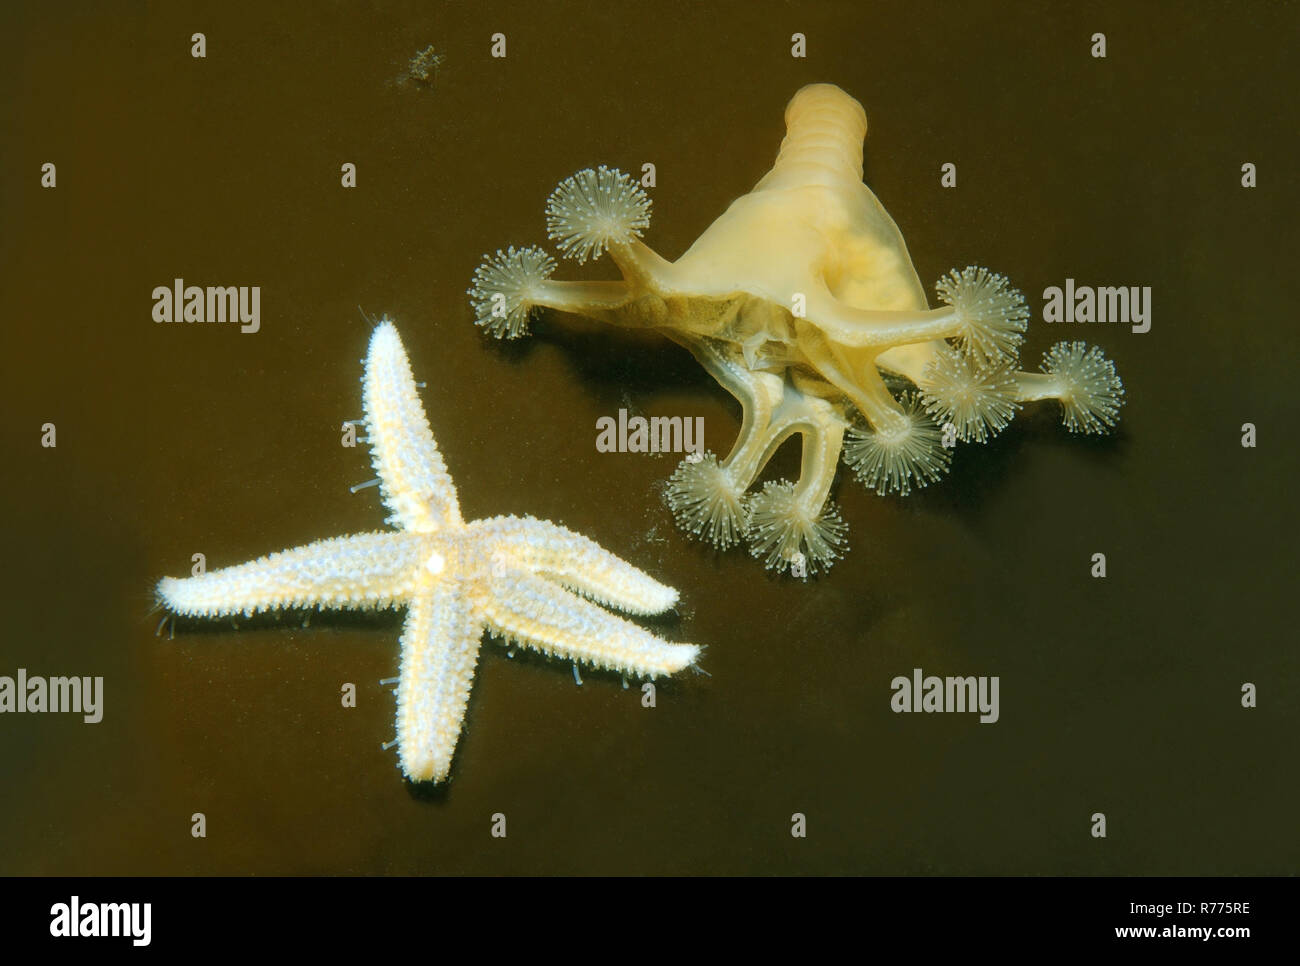 Stalked jellyfish (Lucernaria quadricornis), and common starfish or common sea star (Asterias rubens), White Sea, Karelia Stock Photo